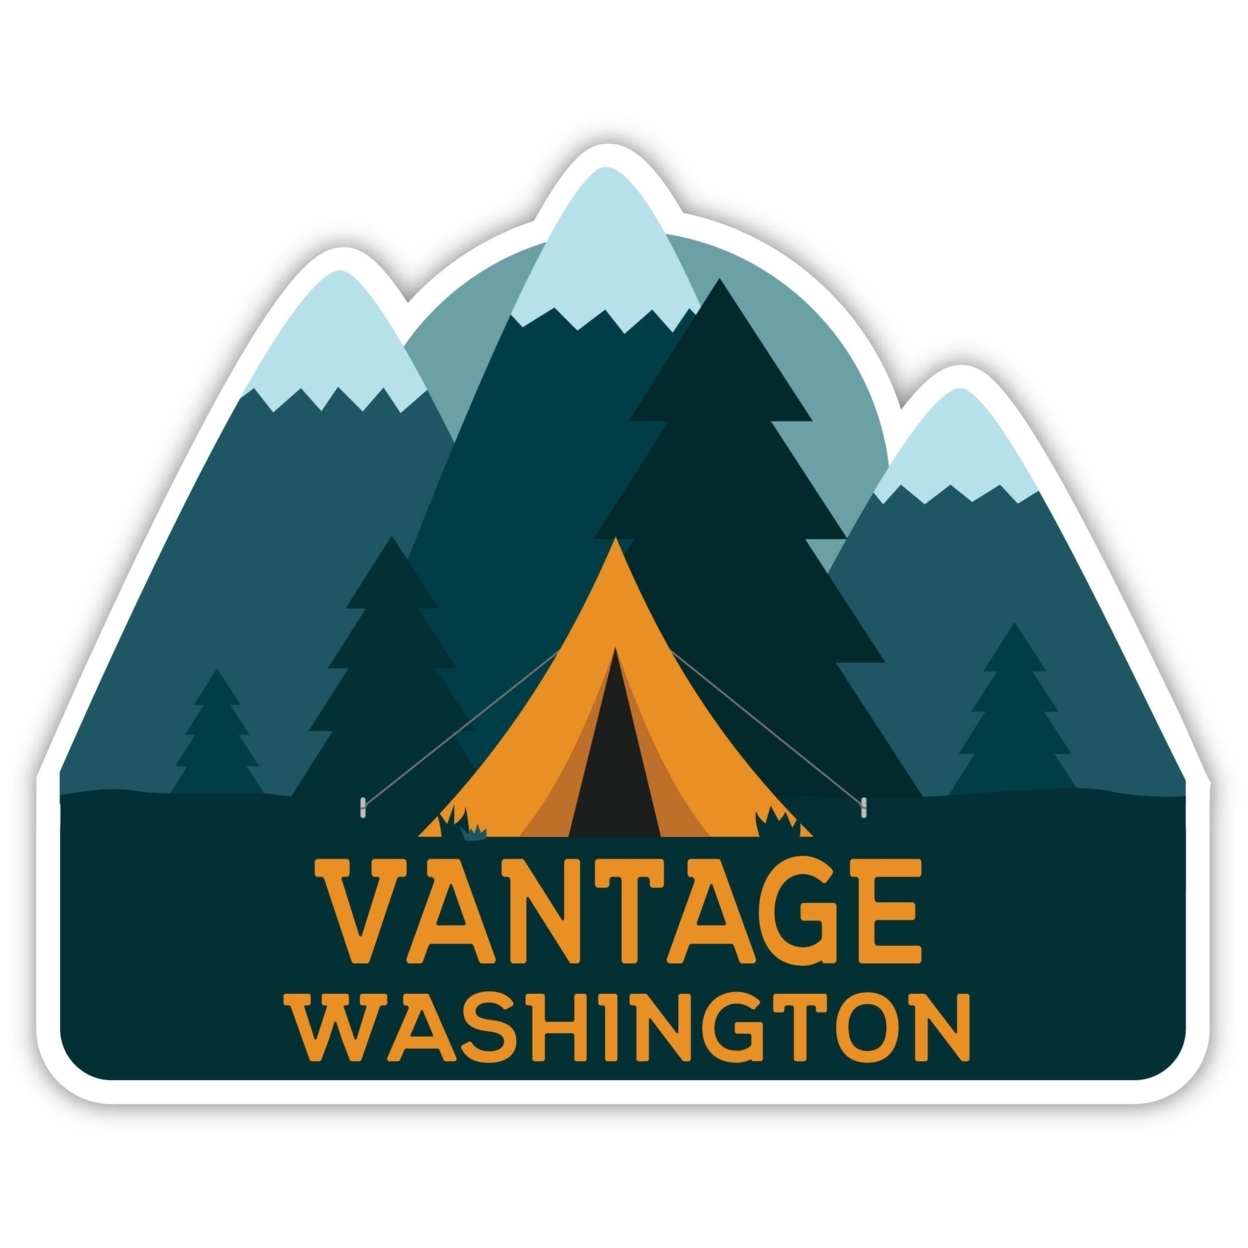 Vantage Washington Souvenir Decorative Stickers (Choose Theme And Size) - Single Unit, 4-Inch, Tent